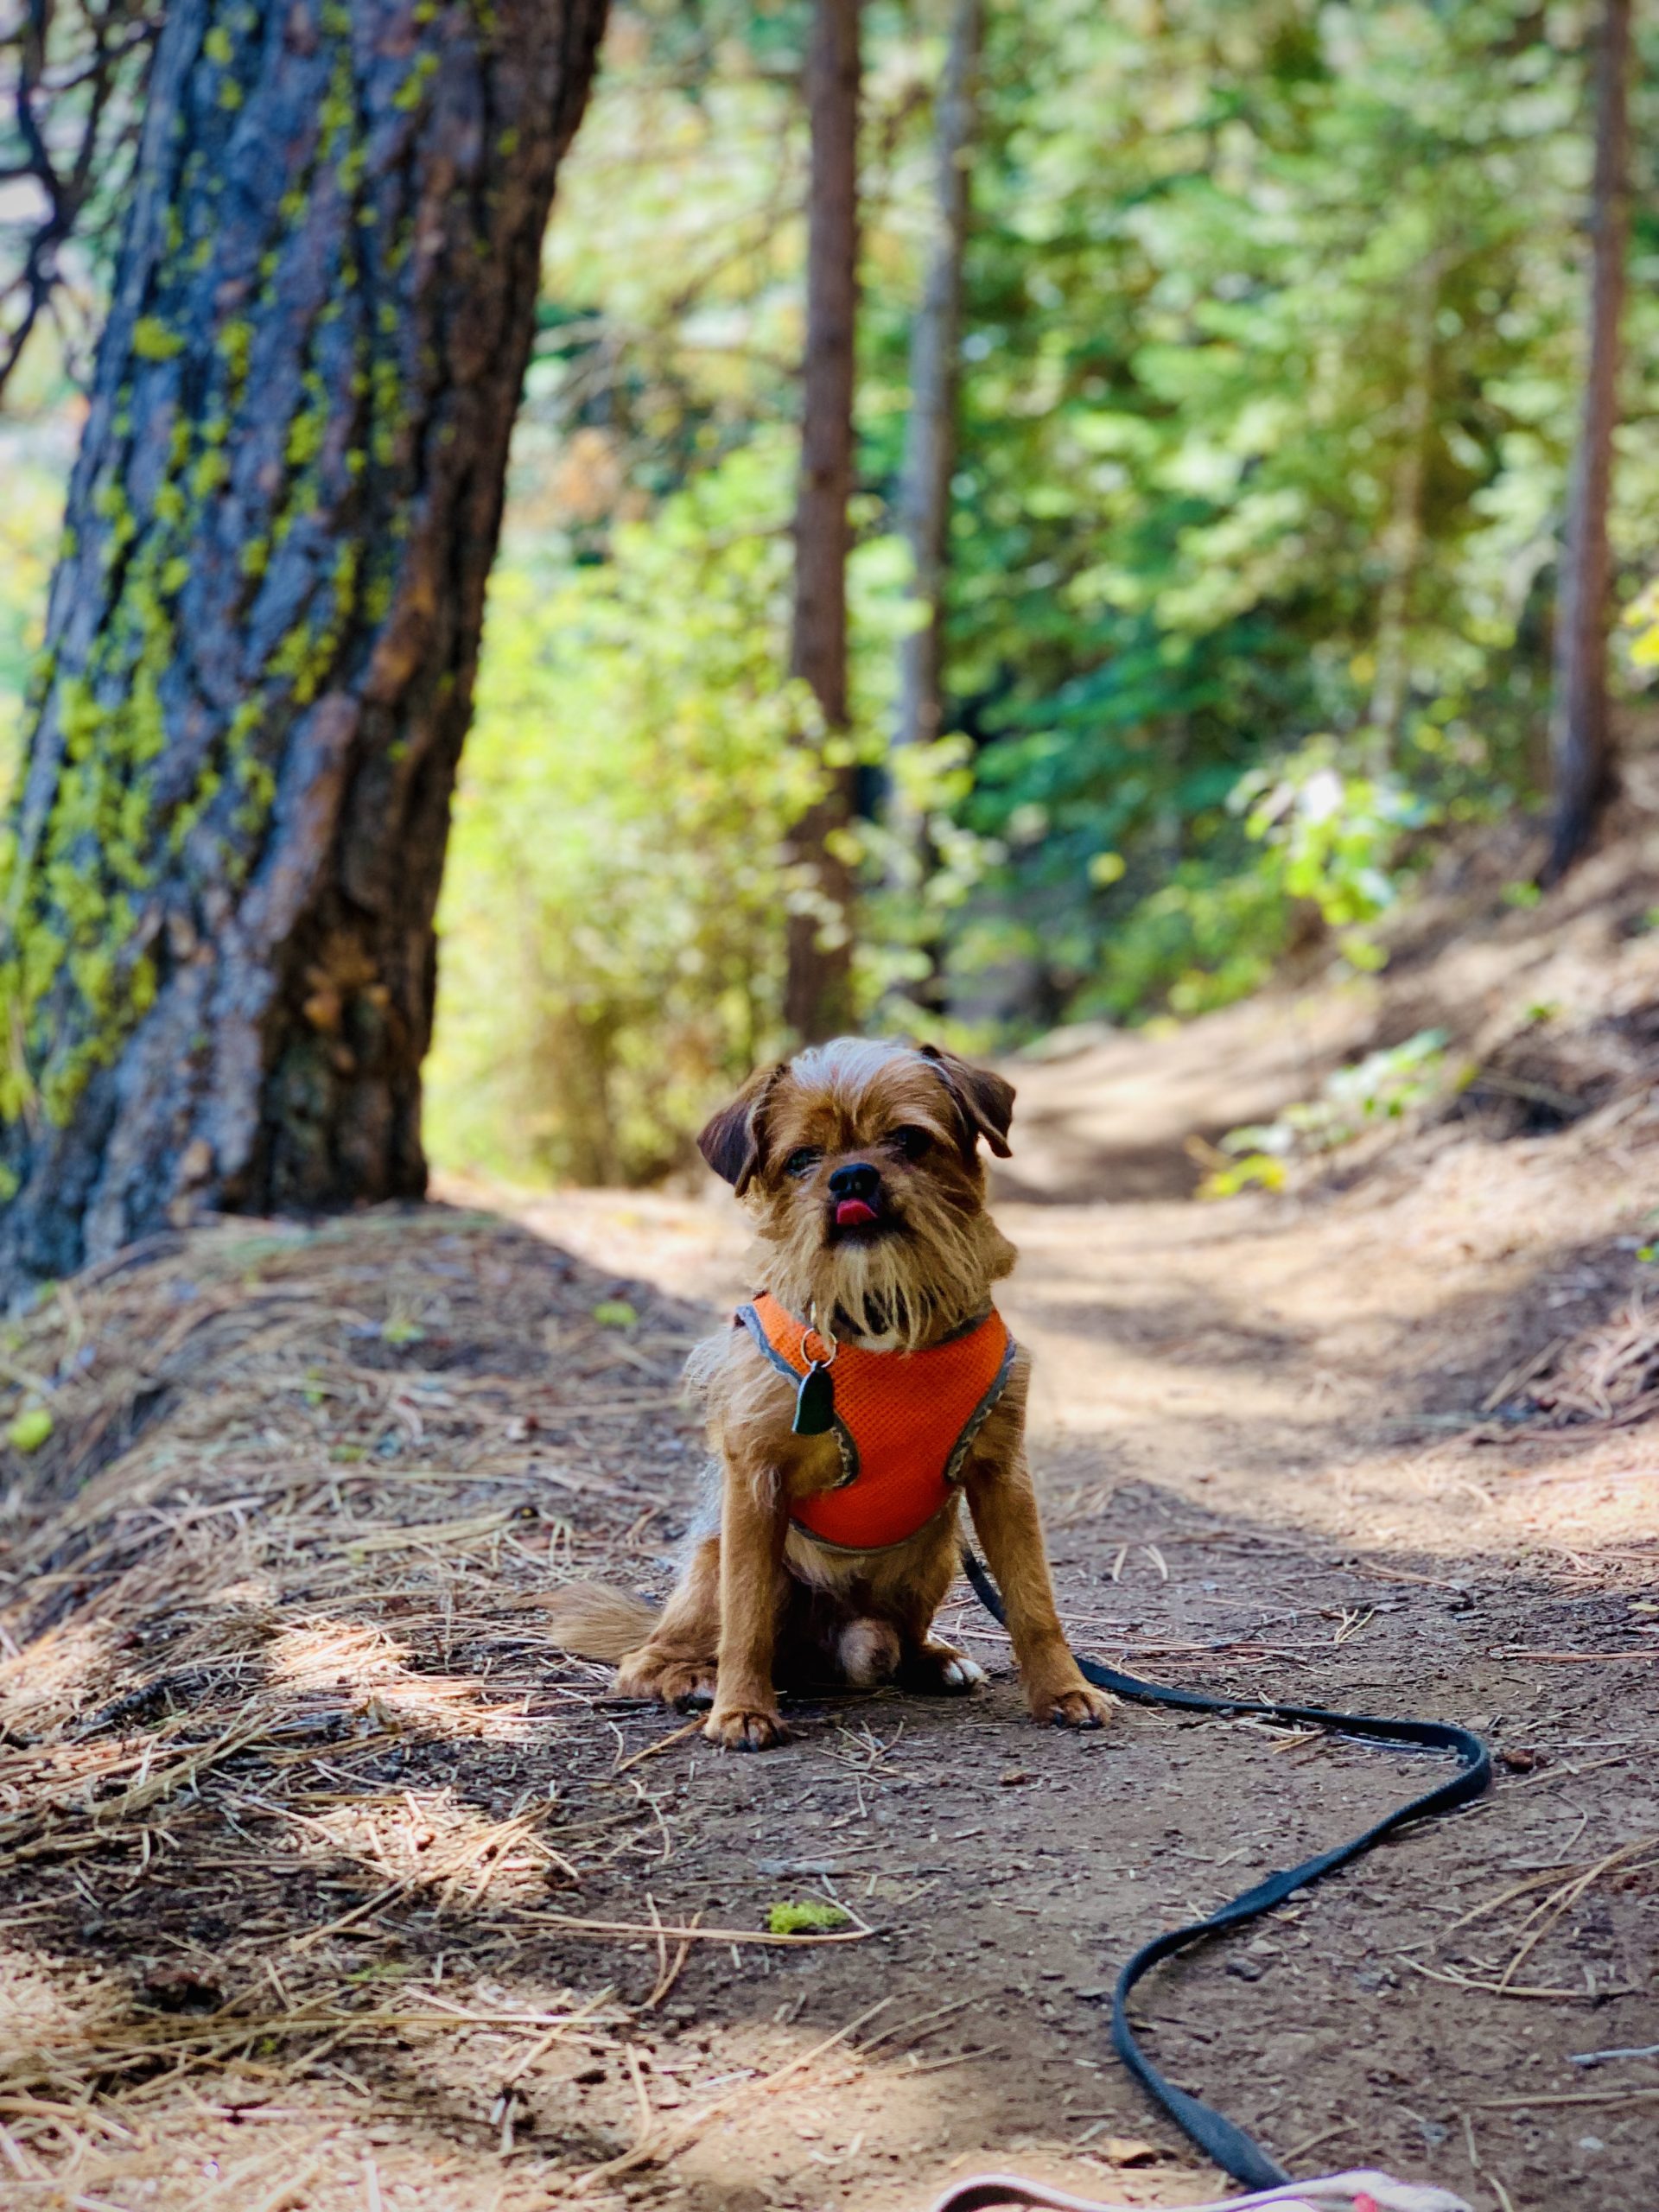 Oscar on the Trail